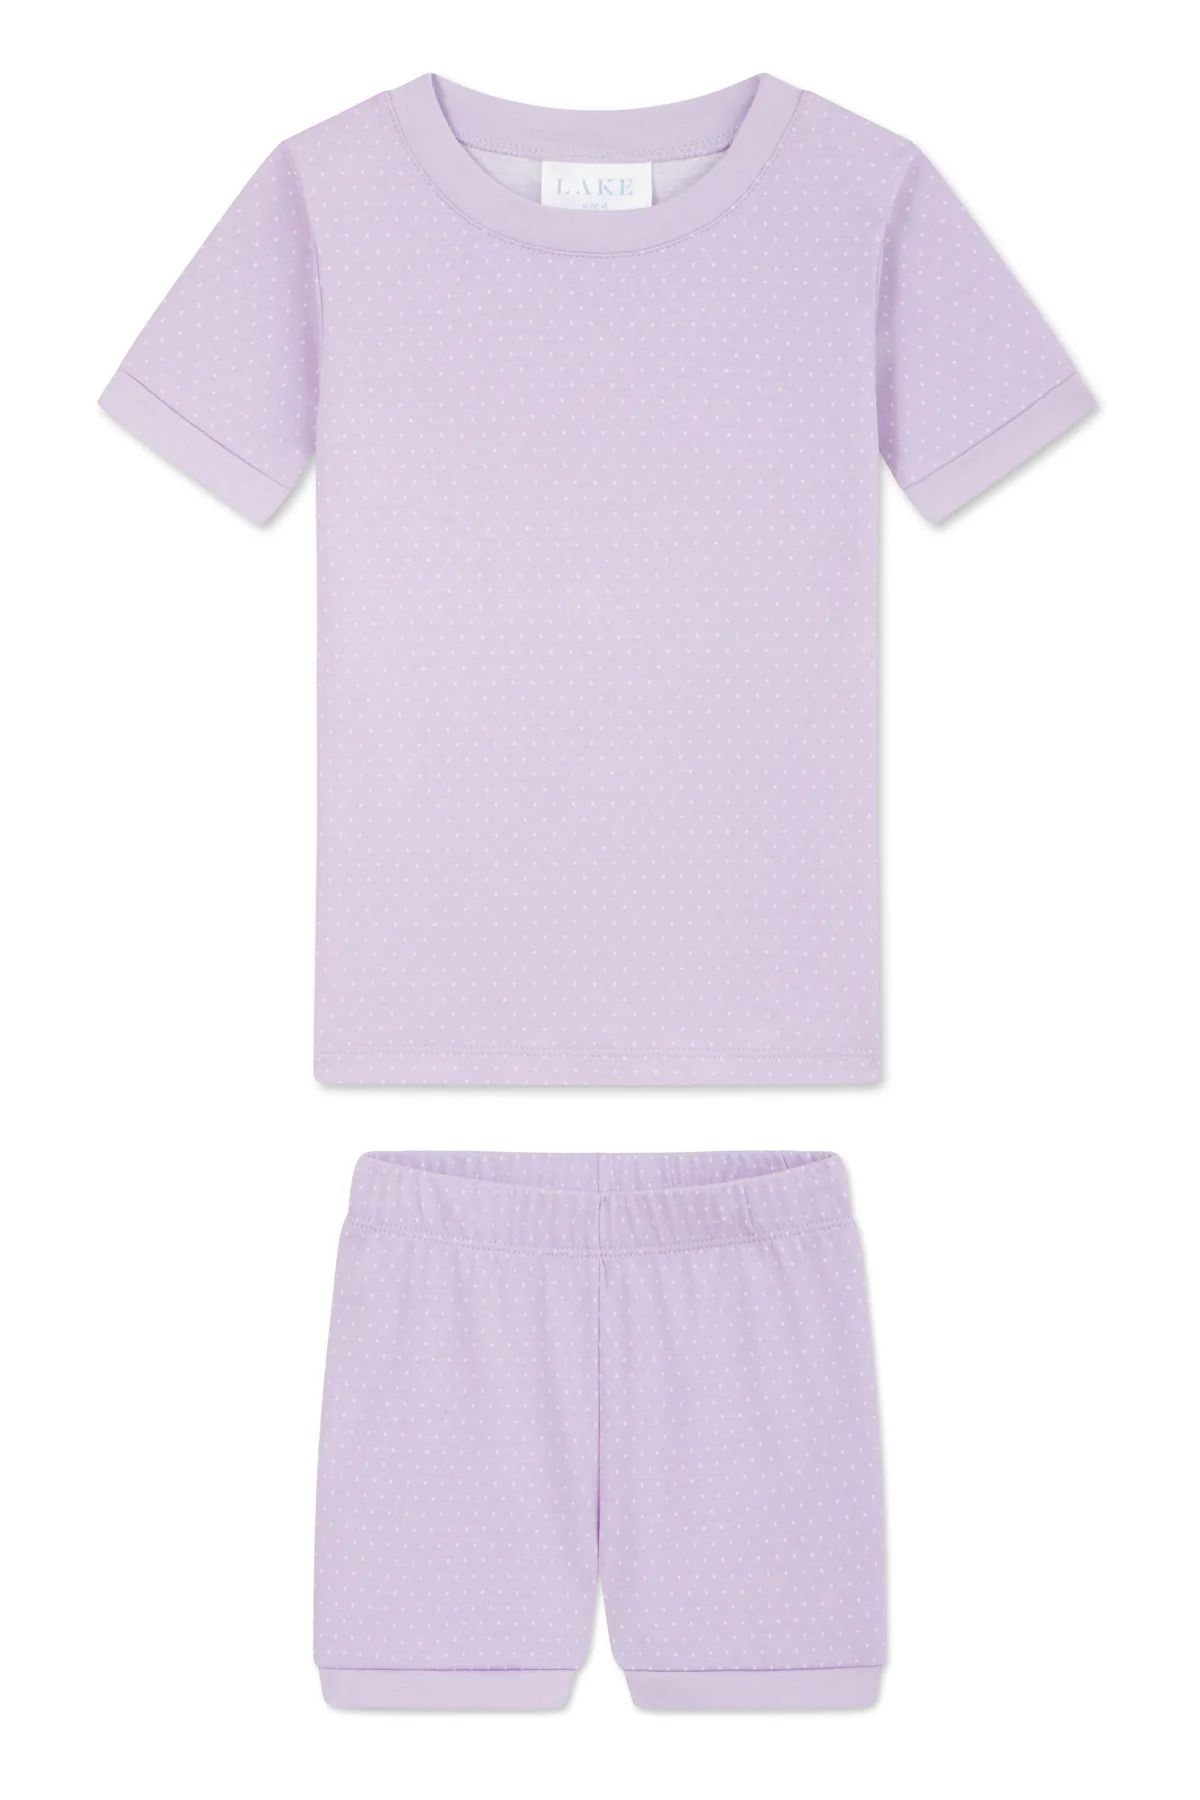 Kids Shorts Set in Lilac Inverse Pindot | Lake Pajamas